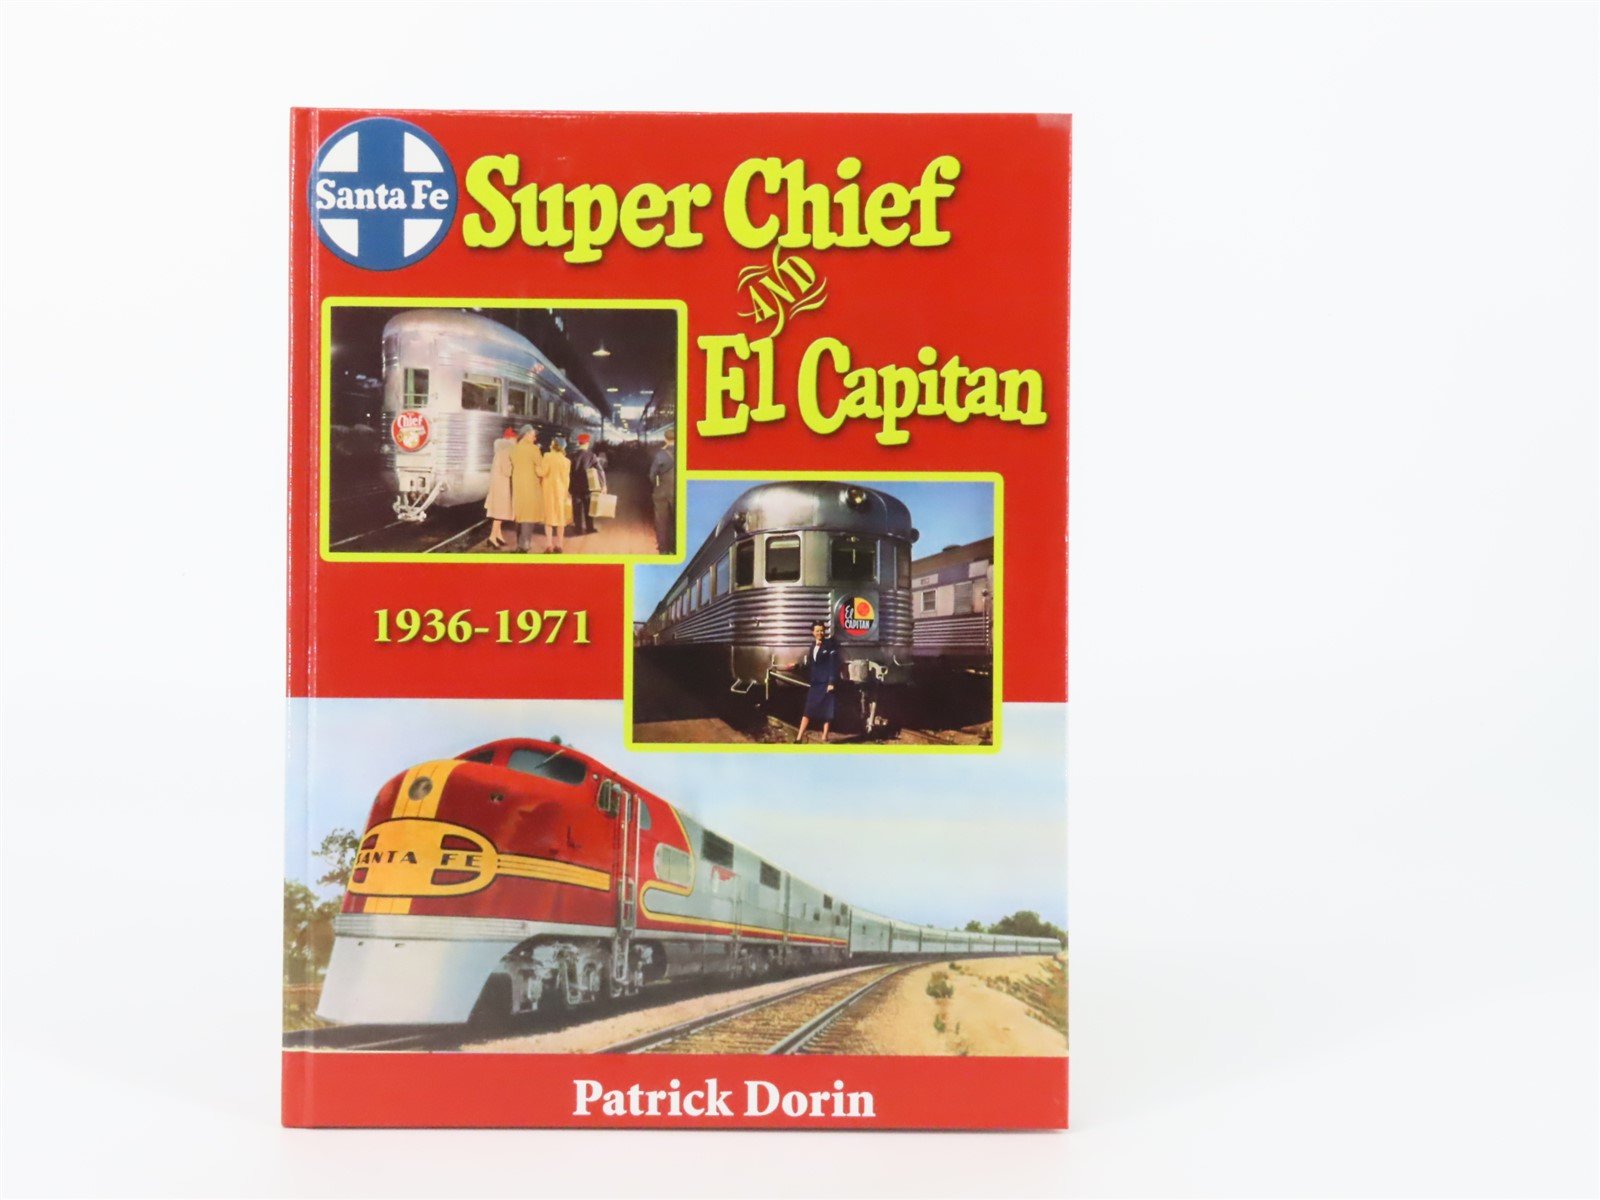 Santa Fe Super Chief And El Capitan 1936-1971 by Patrick Dorin ©2005 HC Book